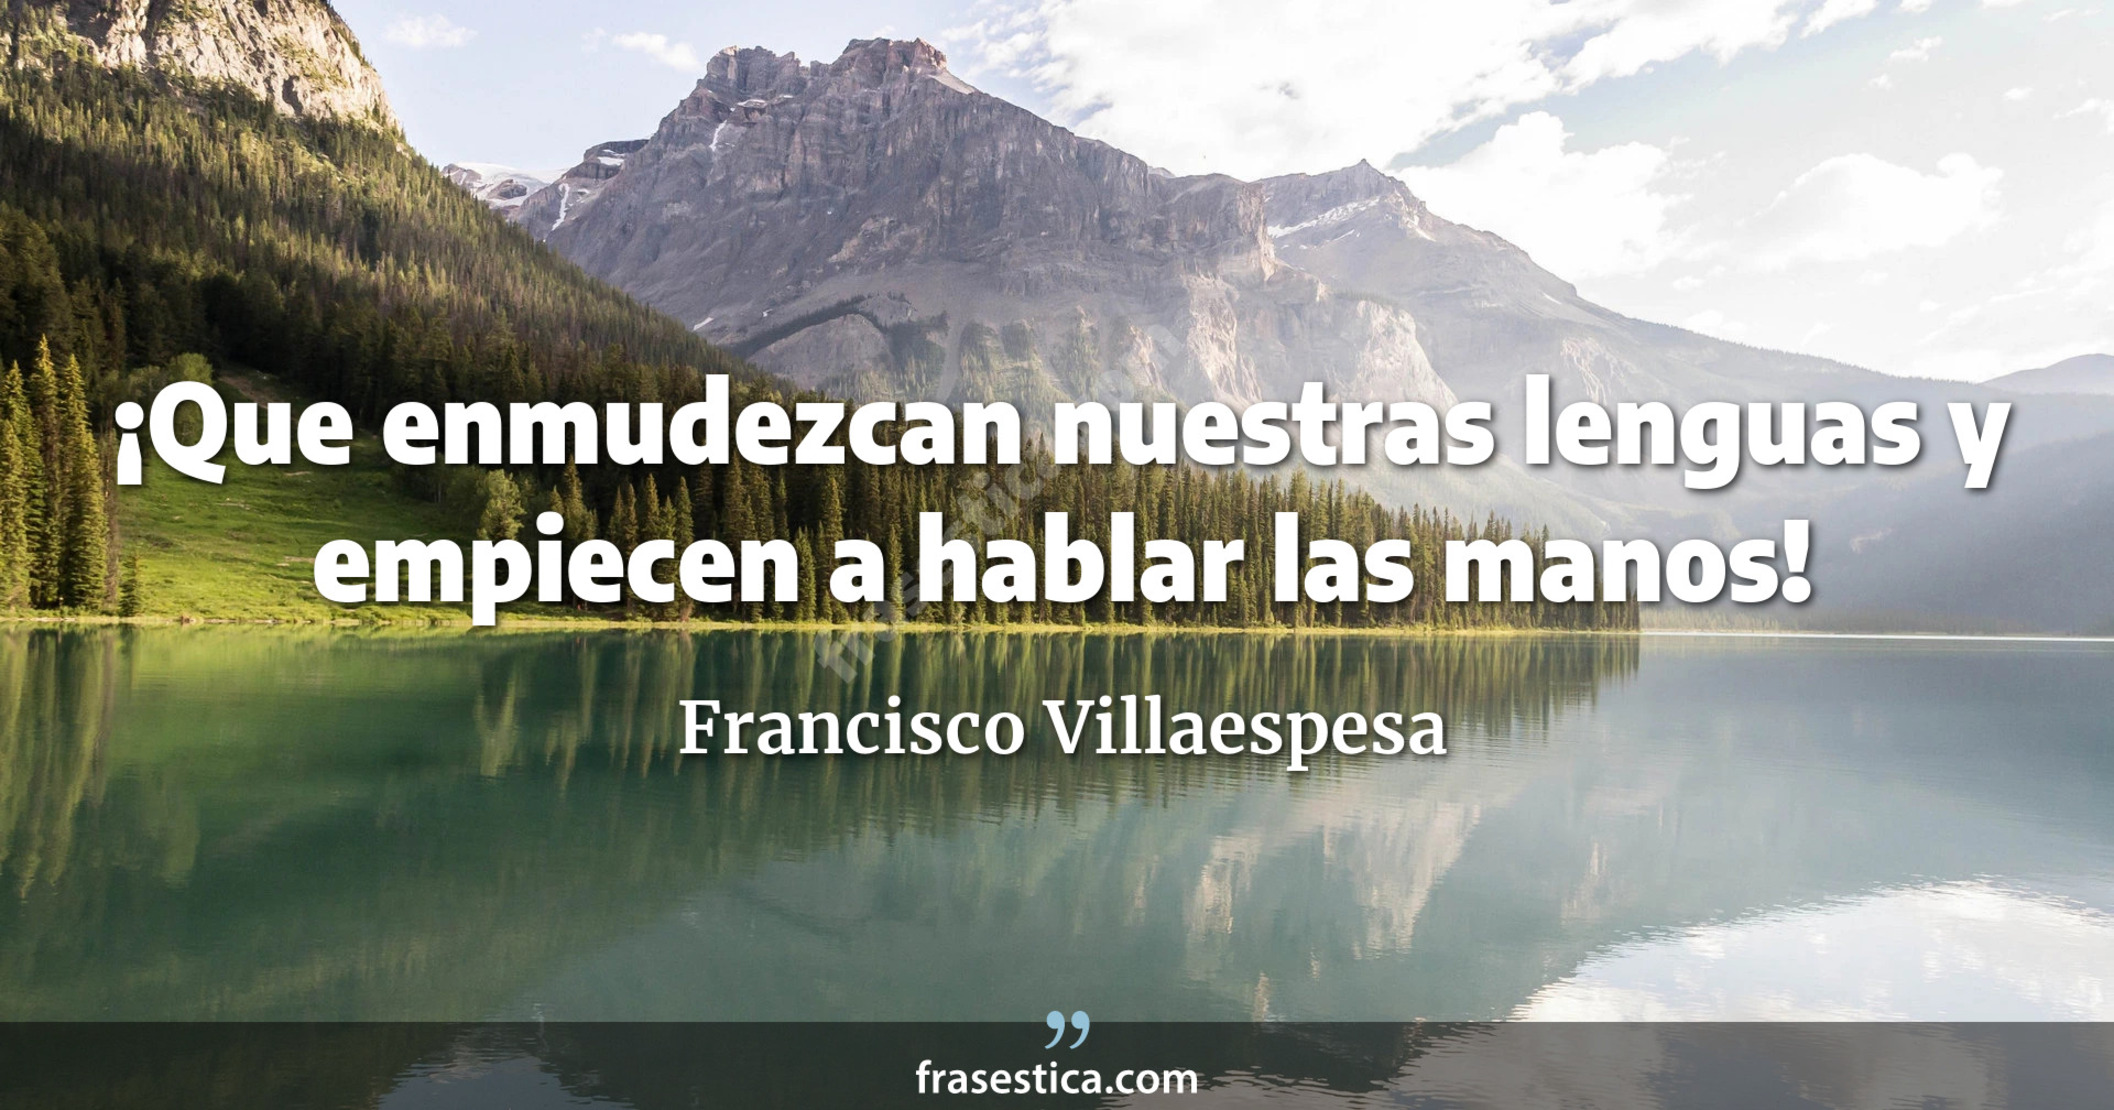 ¡Que enmudezcan nuestras lenguas y empiecen a hablar las manos! - Francisco Villaespesa